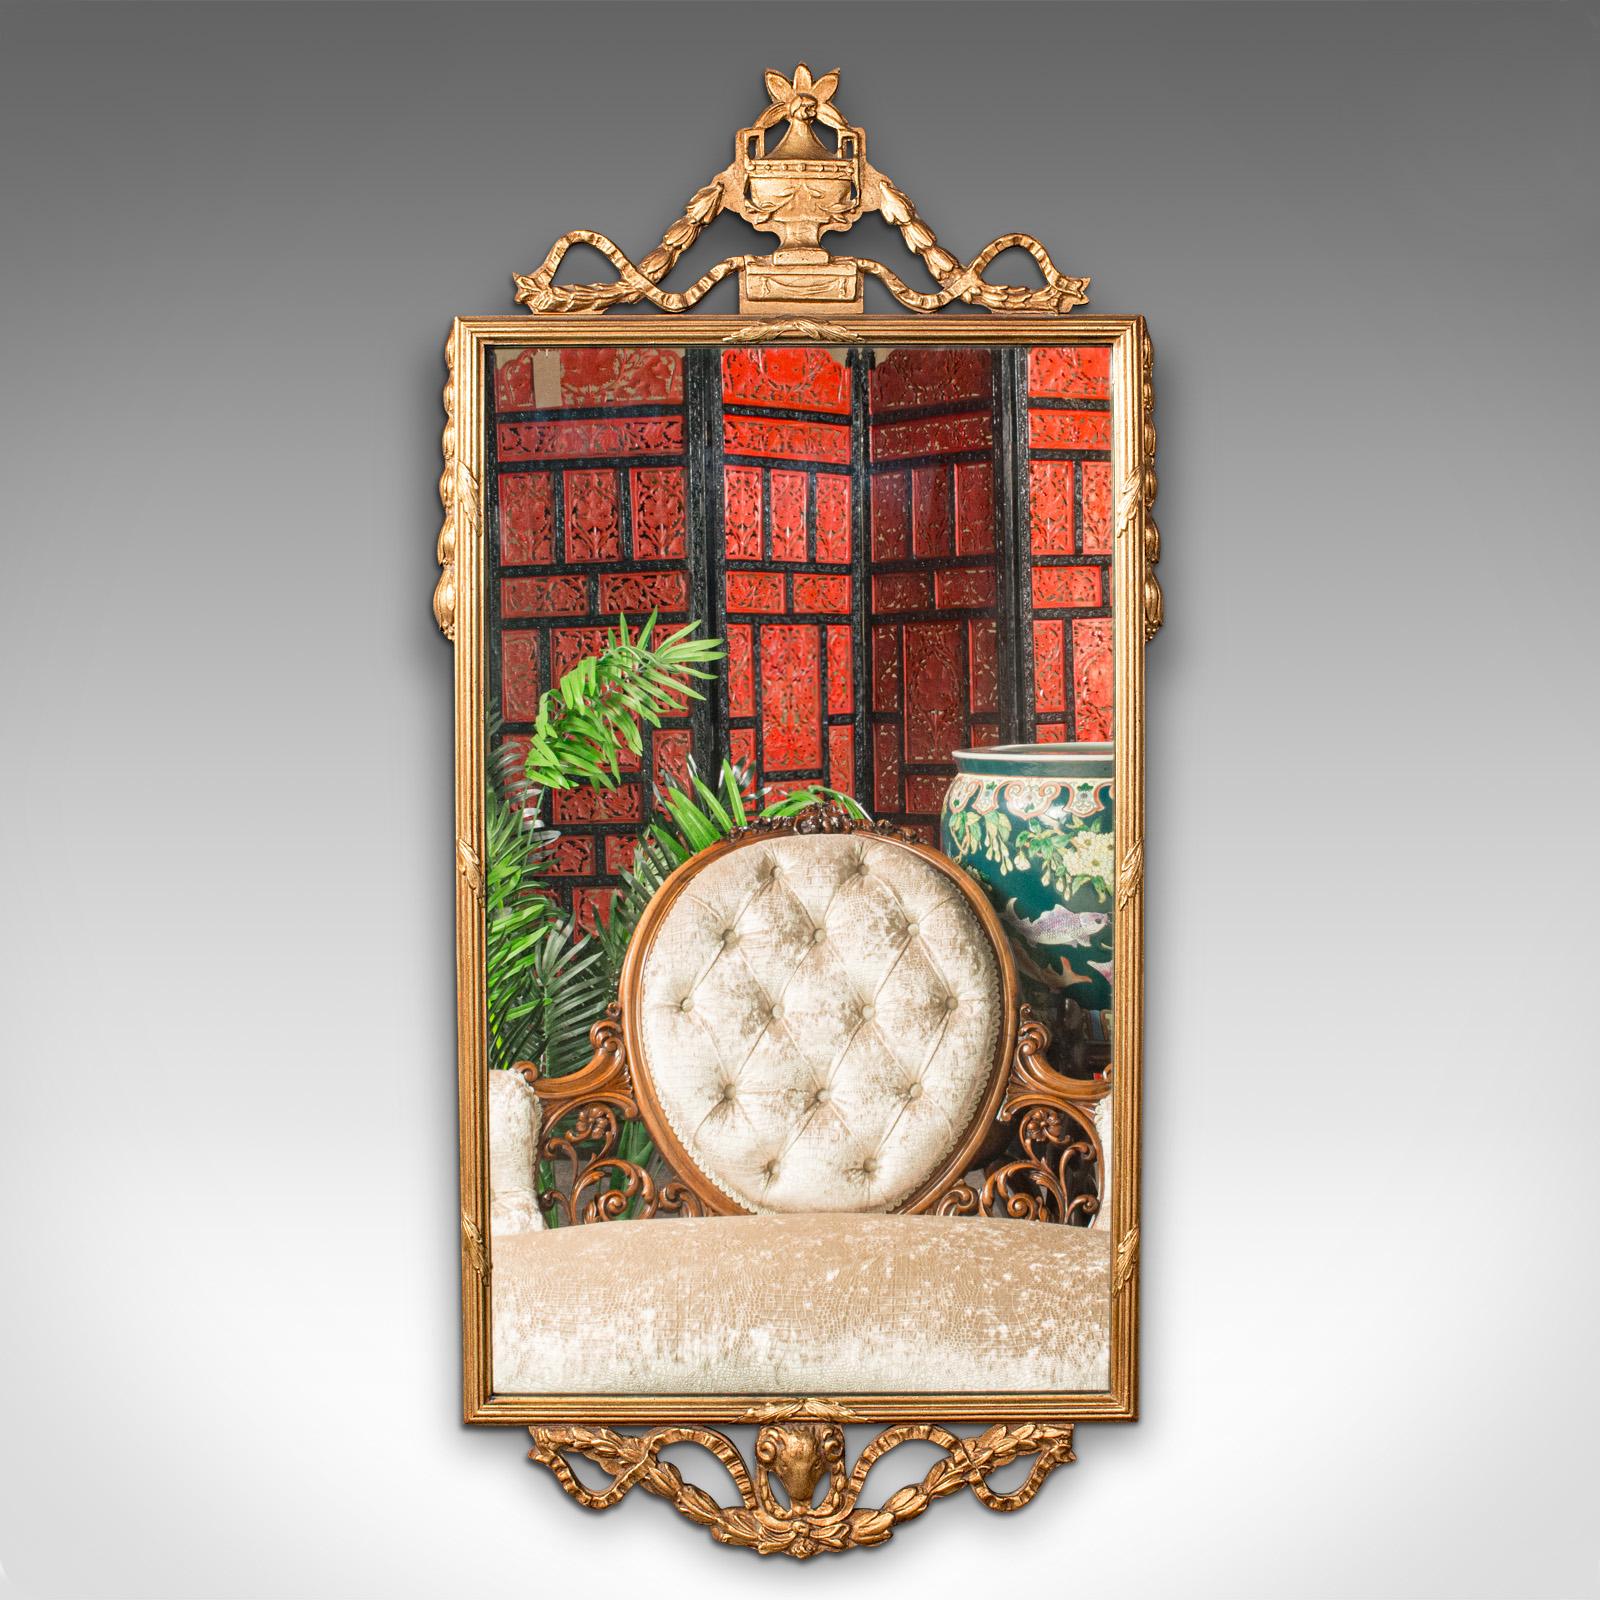 Il s'agit d'un miroir de café vintage. Miroir de hall ou de manteau, en bois doré et verre, datant du milieu du 20e siècle, vers 1950.

Un cadre pimpant entoure une plaque de miroir agréablement lumineuse
Patine d'ancienneté souhaitable et bon état